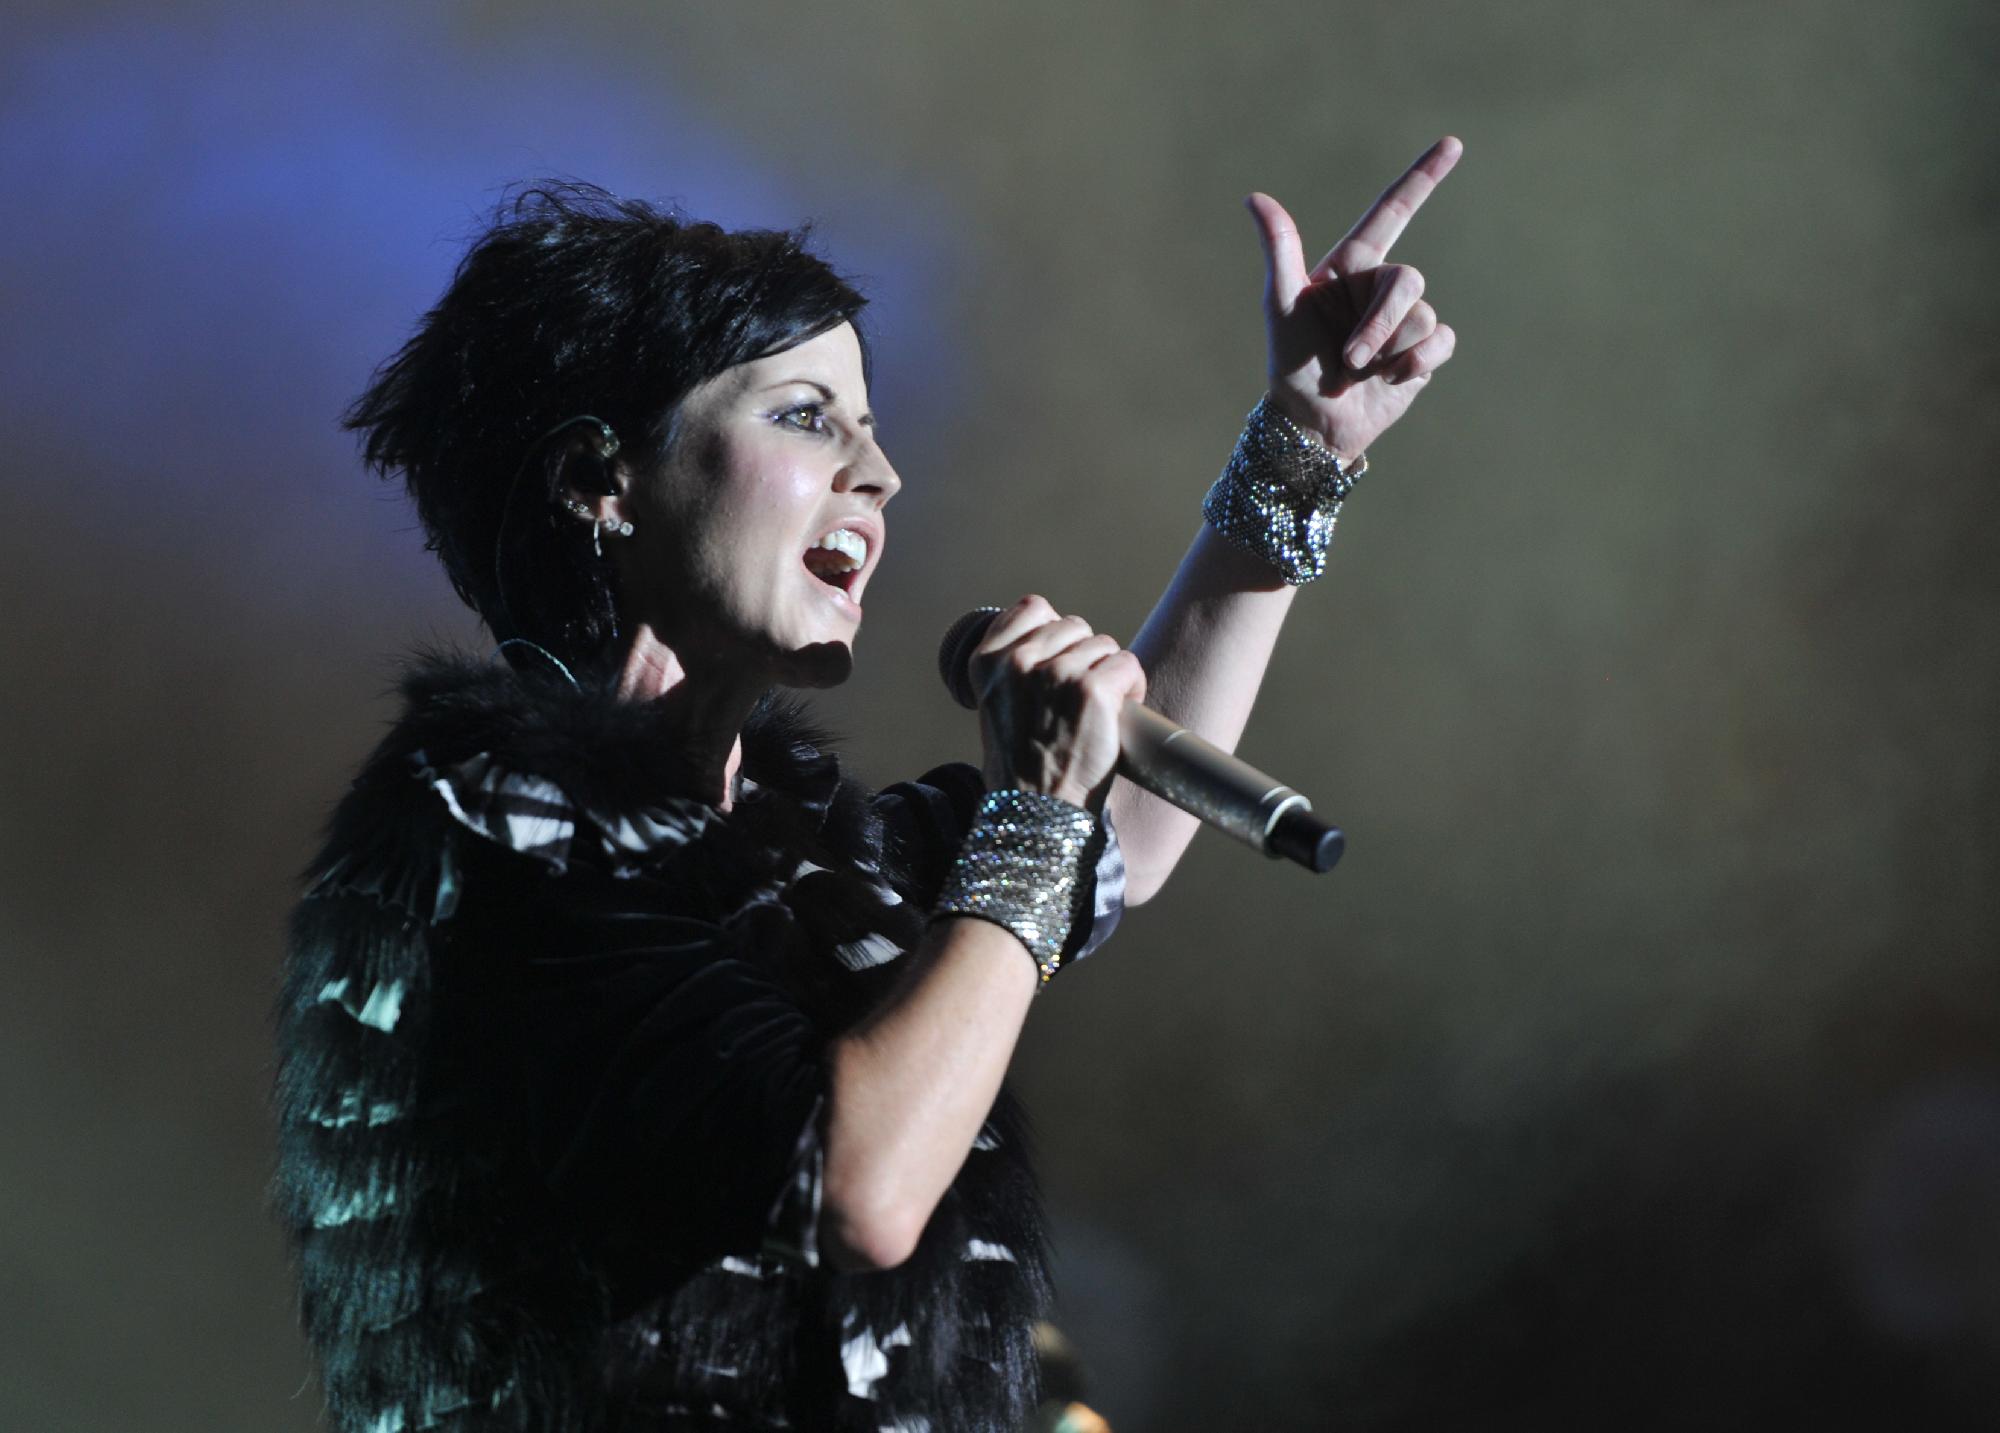 Fulladás okozta az énekesnő halálát